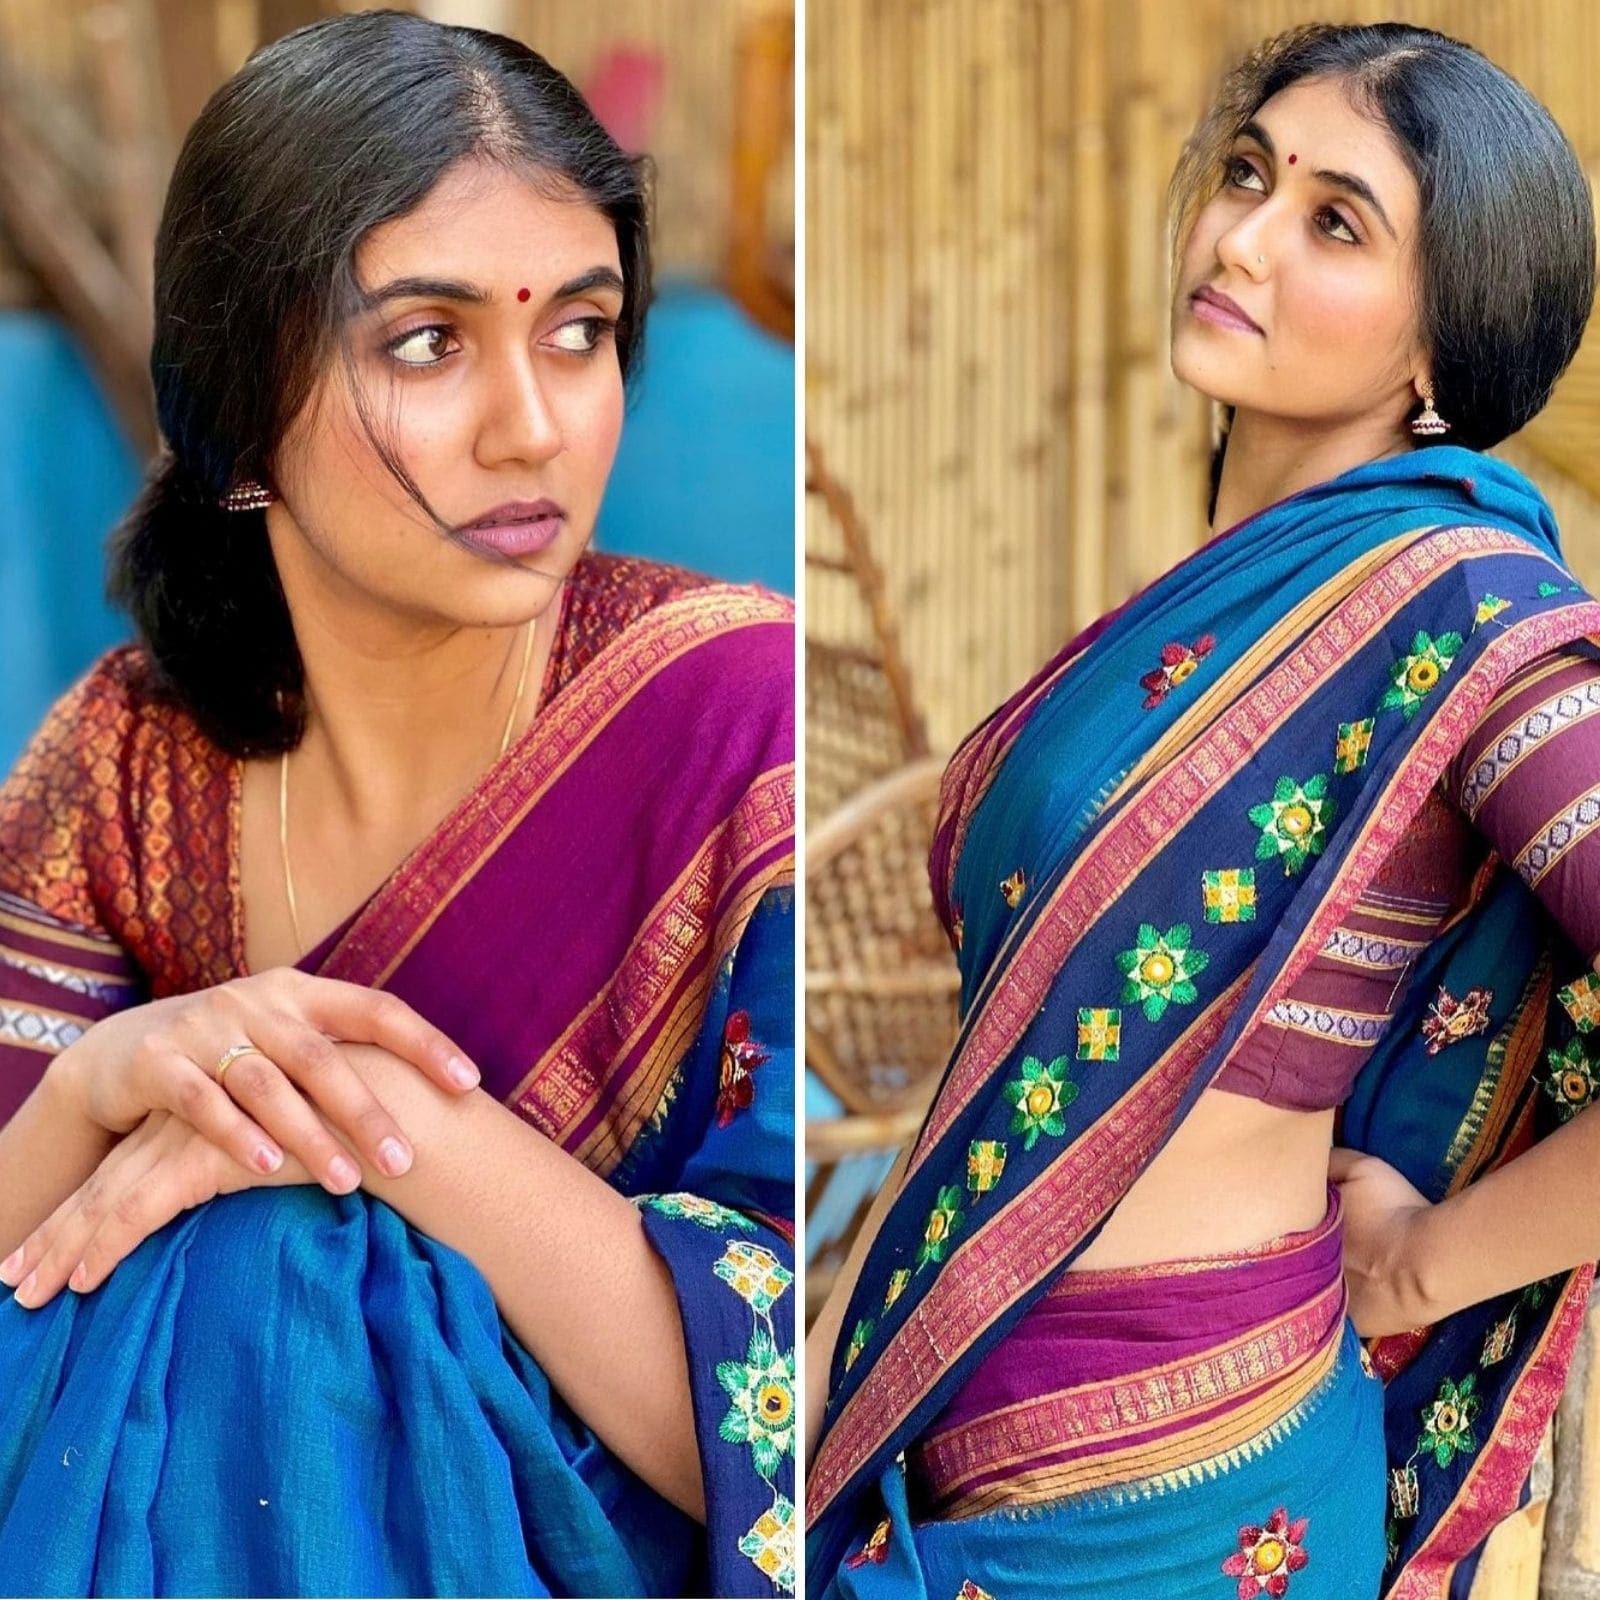 Rinku Rajguru Ke Sex - Rinku Rajguru Posts Photos in Blue Saree, Fans Compare Her To Smita Patil -  News18